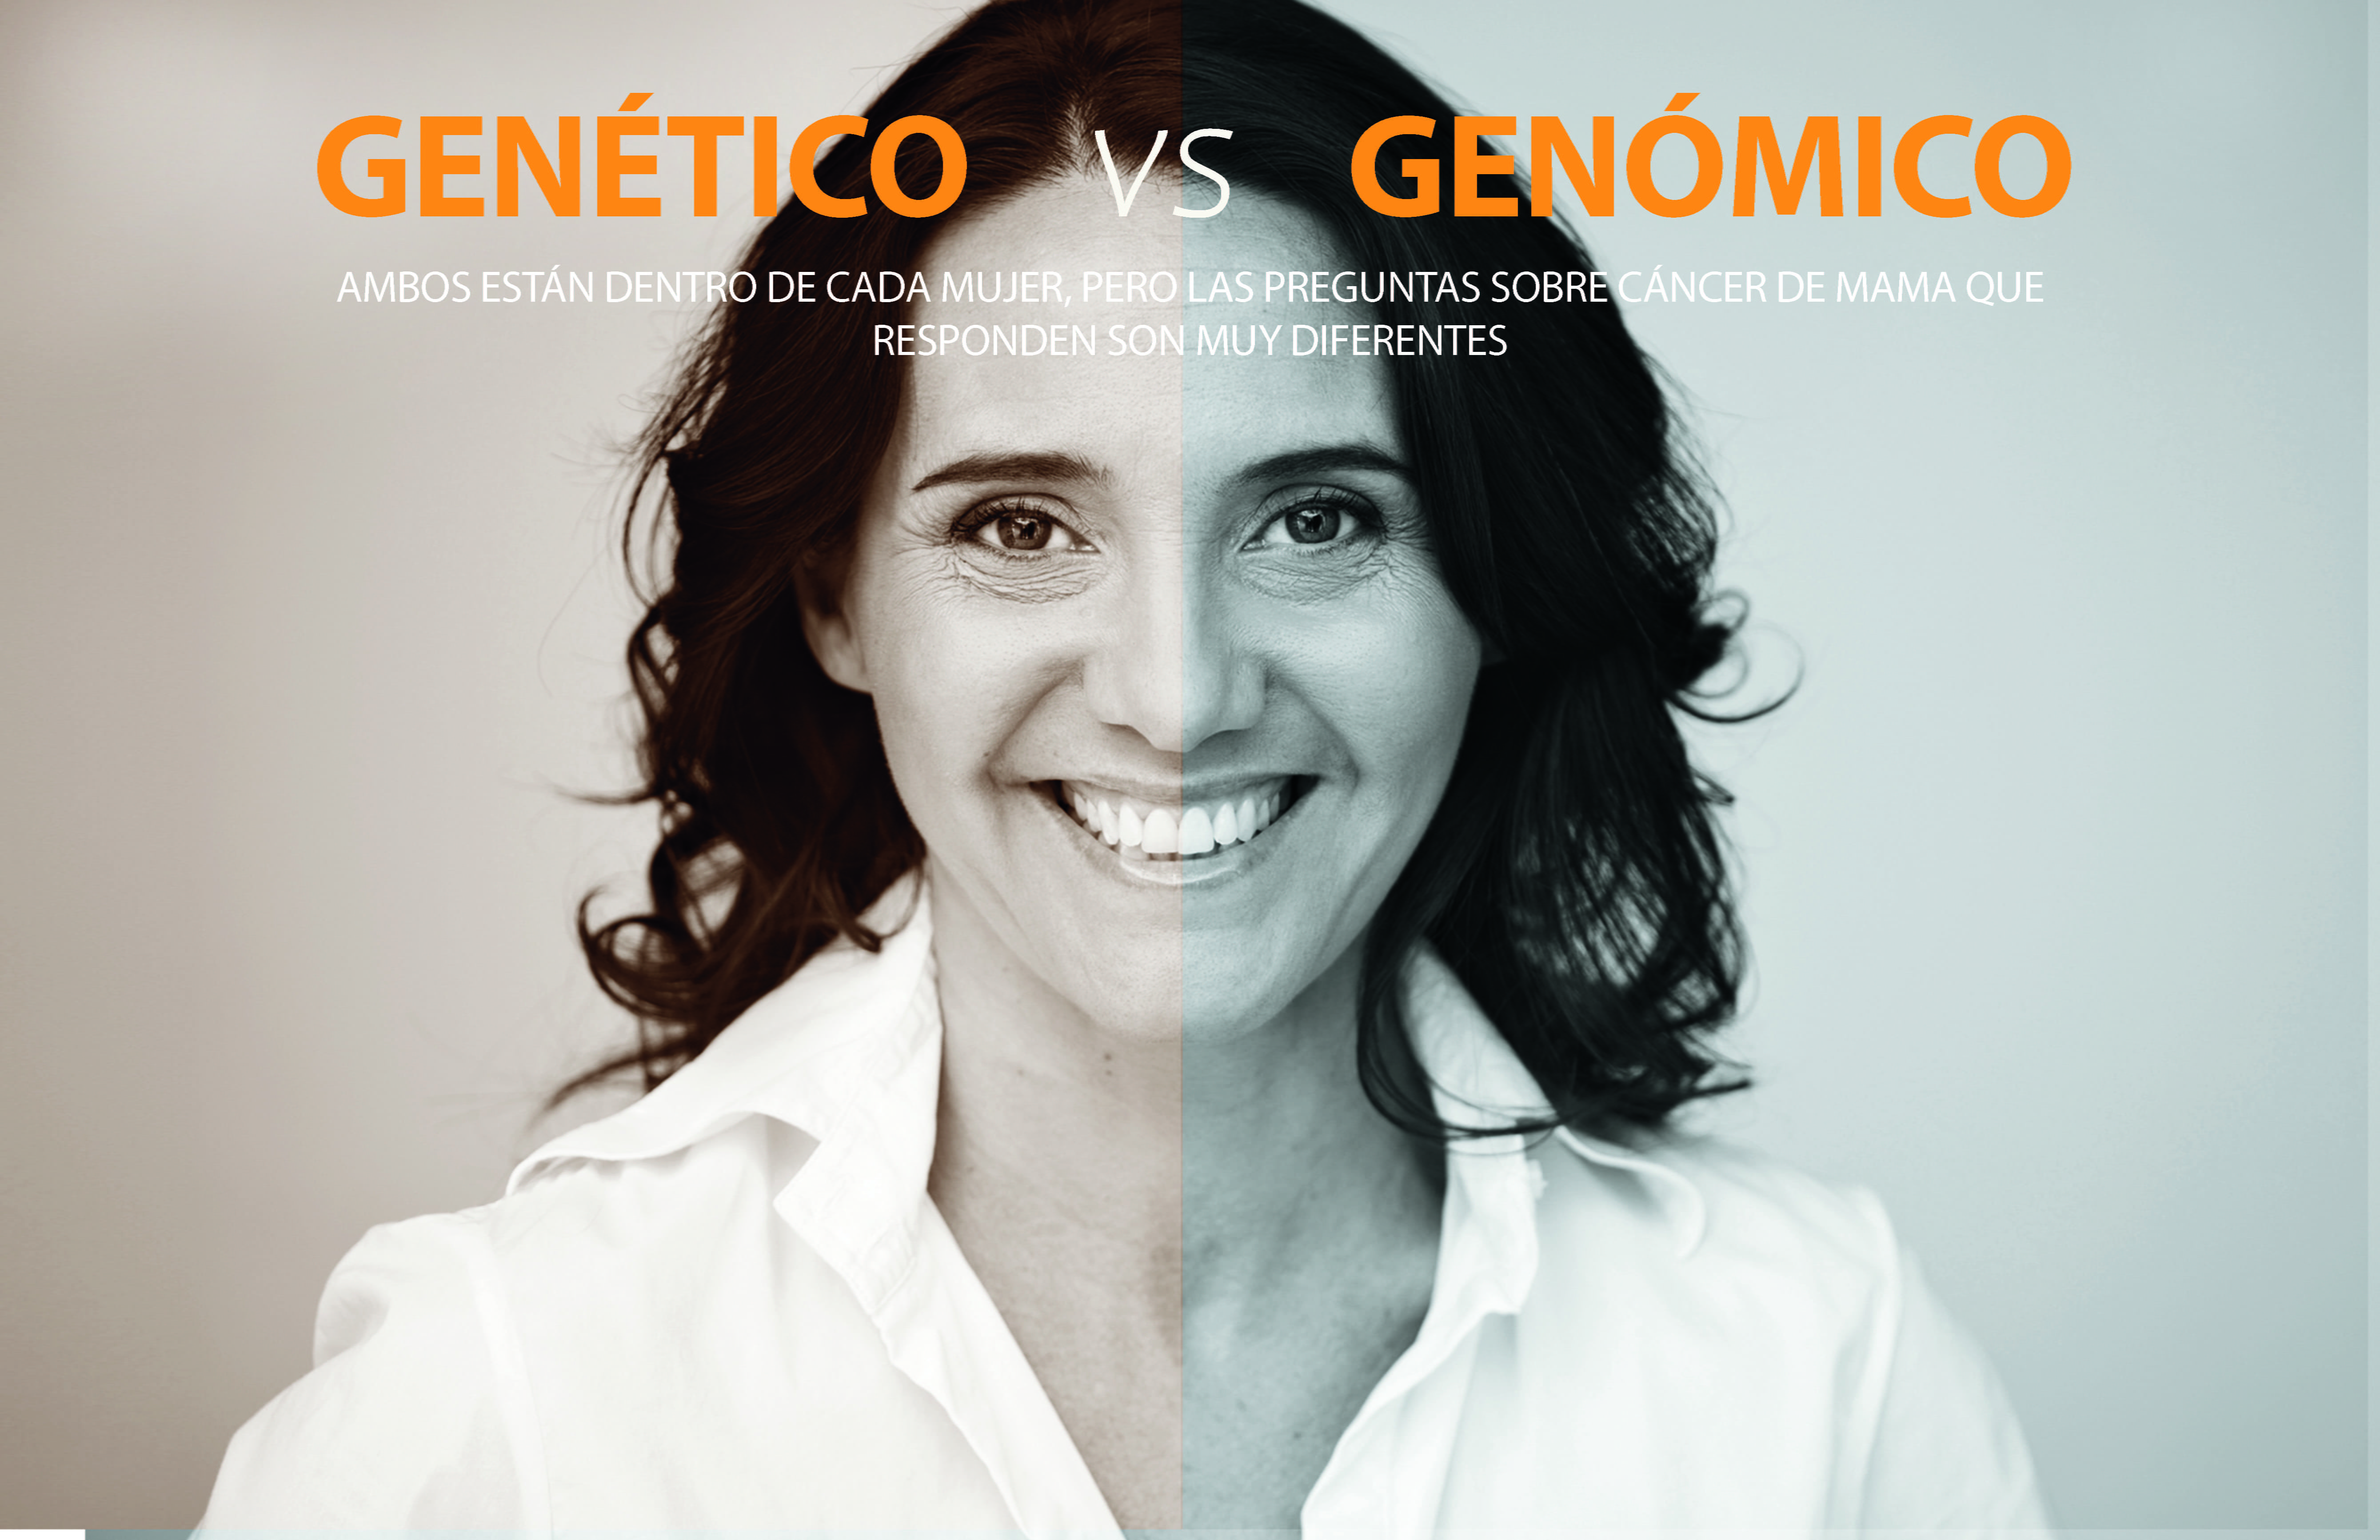 Genétio vs. Genómico Ambos están dentro de cada mujer, pero las preguntas sobre cancer de mama que responded son muy diferentes